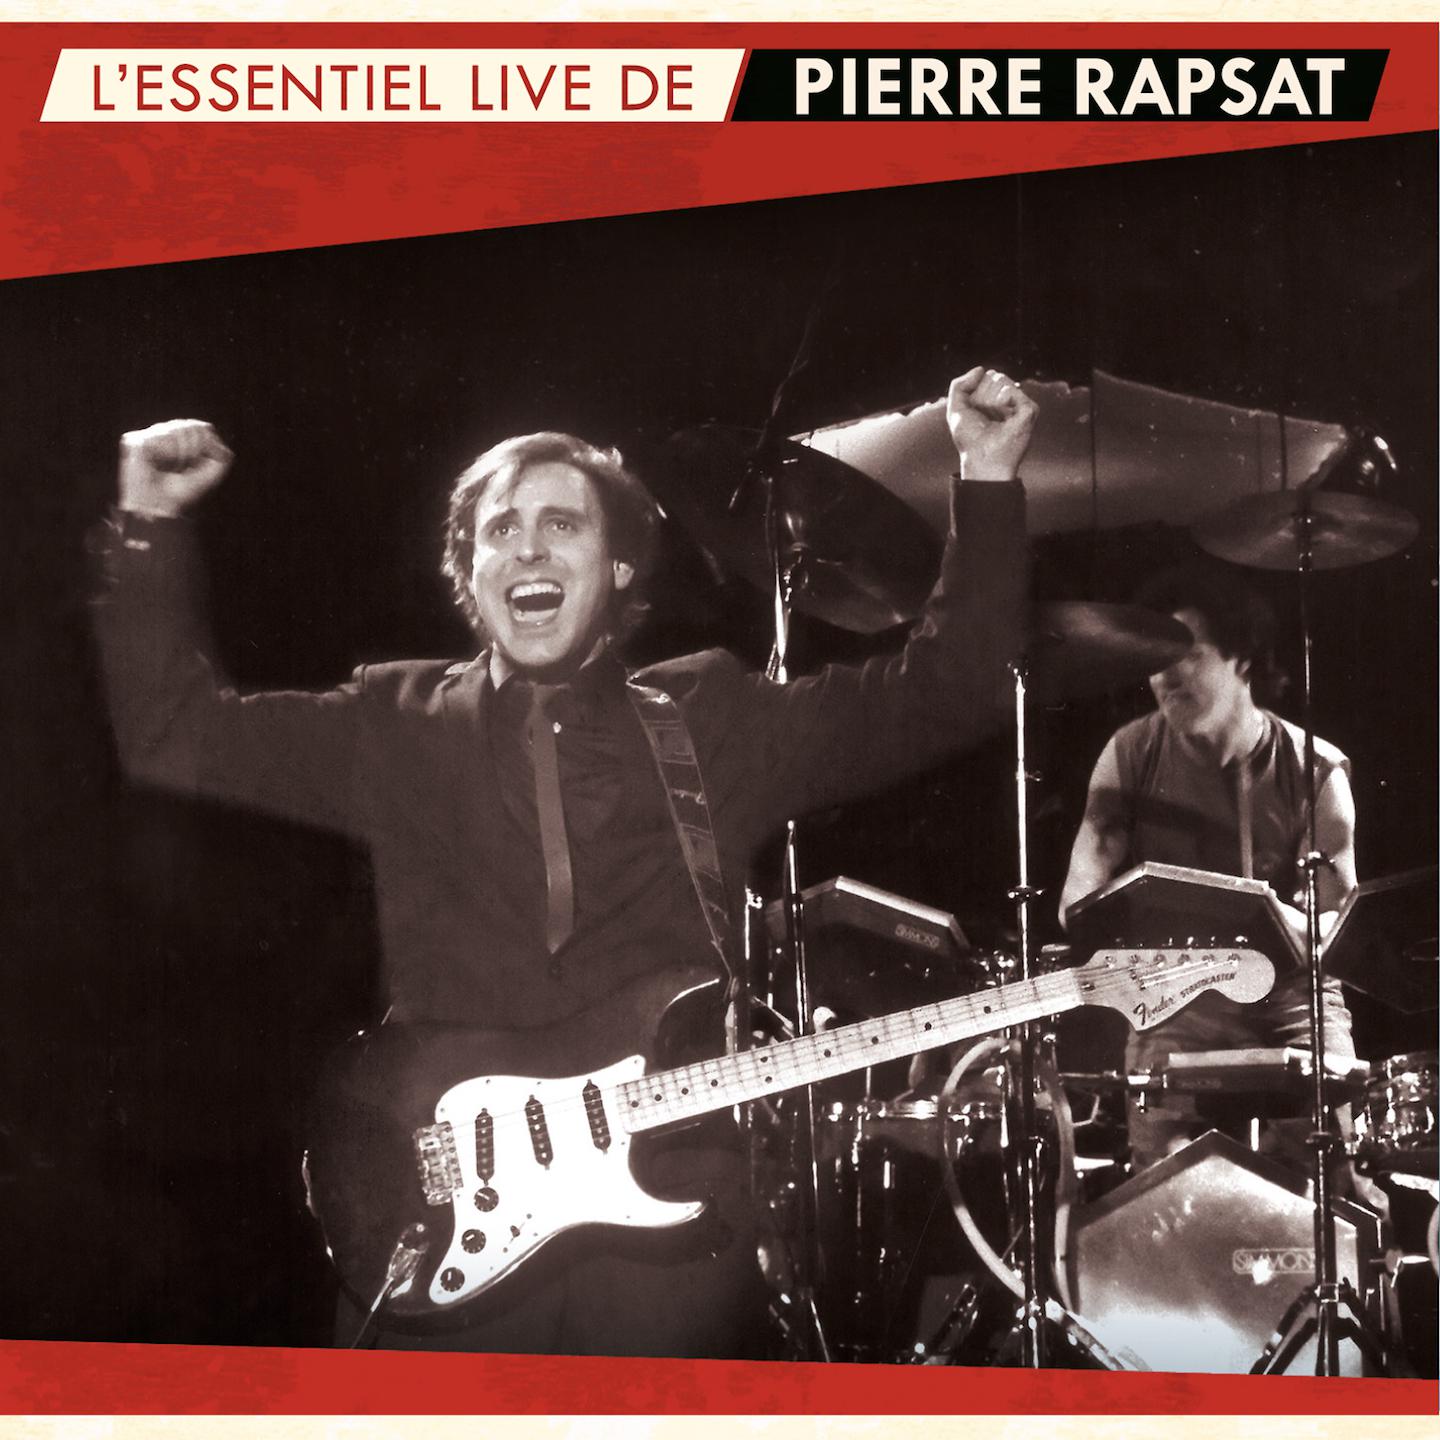 Pierre Rapsat - C'est toujours un mystère (Live 2001)